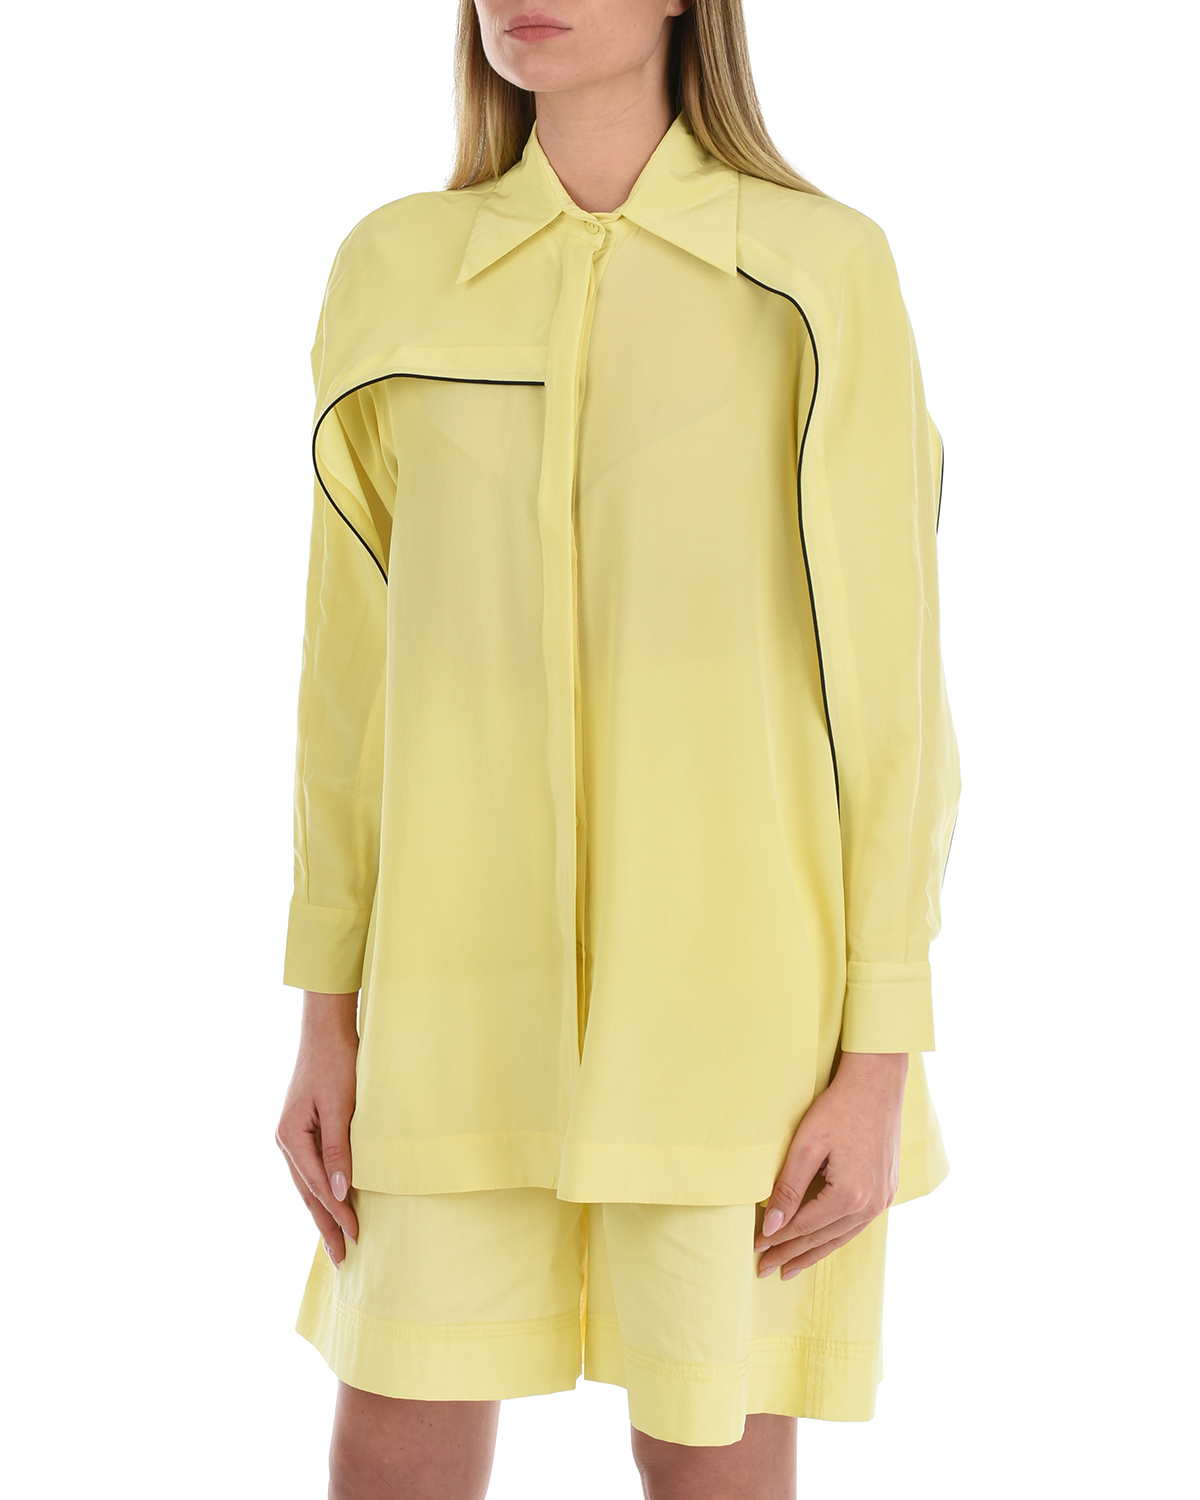 Шелковая блуза лимонного цвета LOVE BIRDS, размер 40 - фото 9